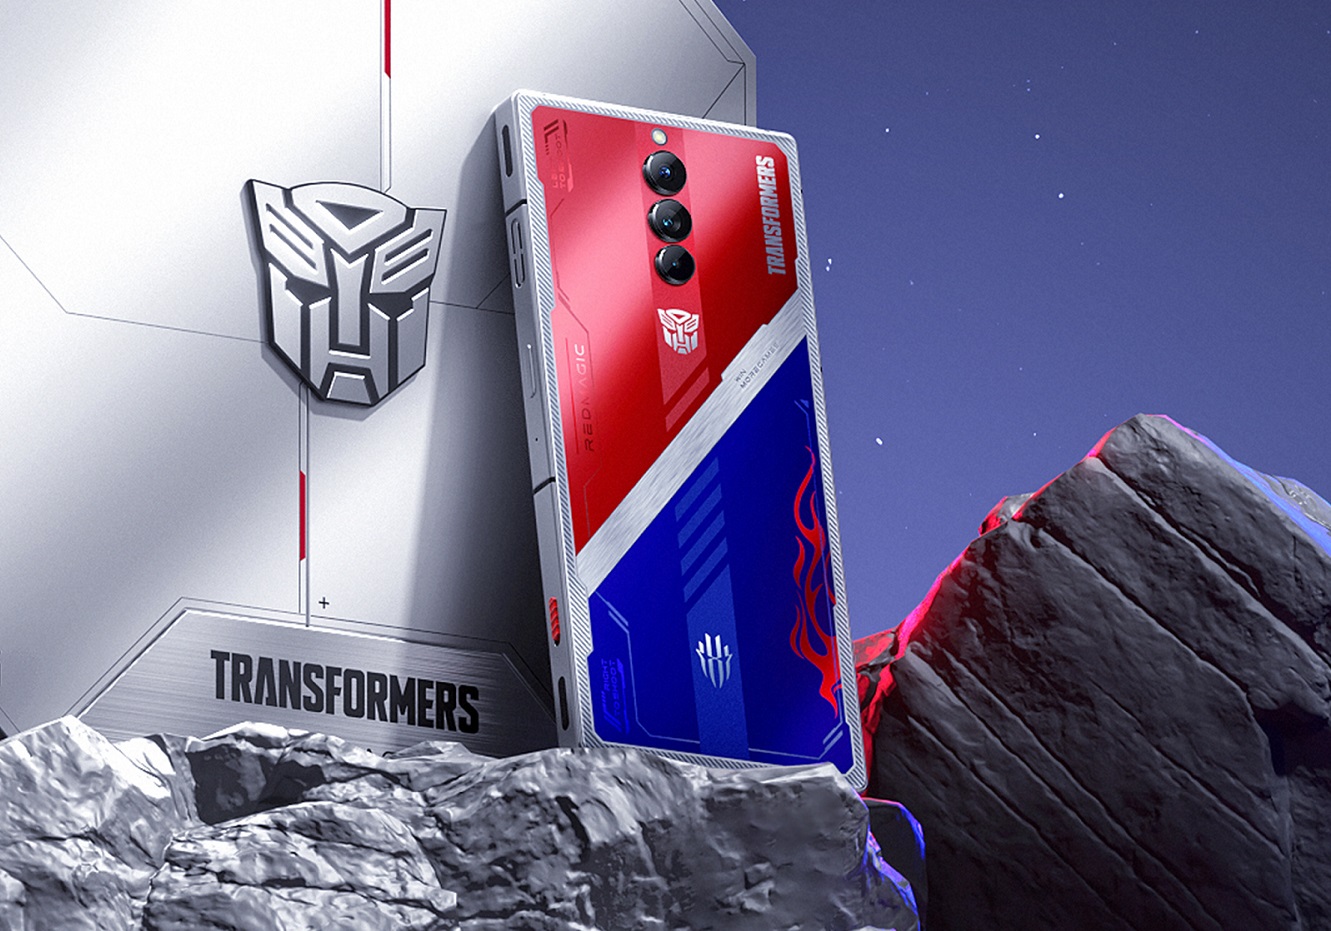 игровой смартфон Red Magic 8 Pro+ Transformers Leader Edition.